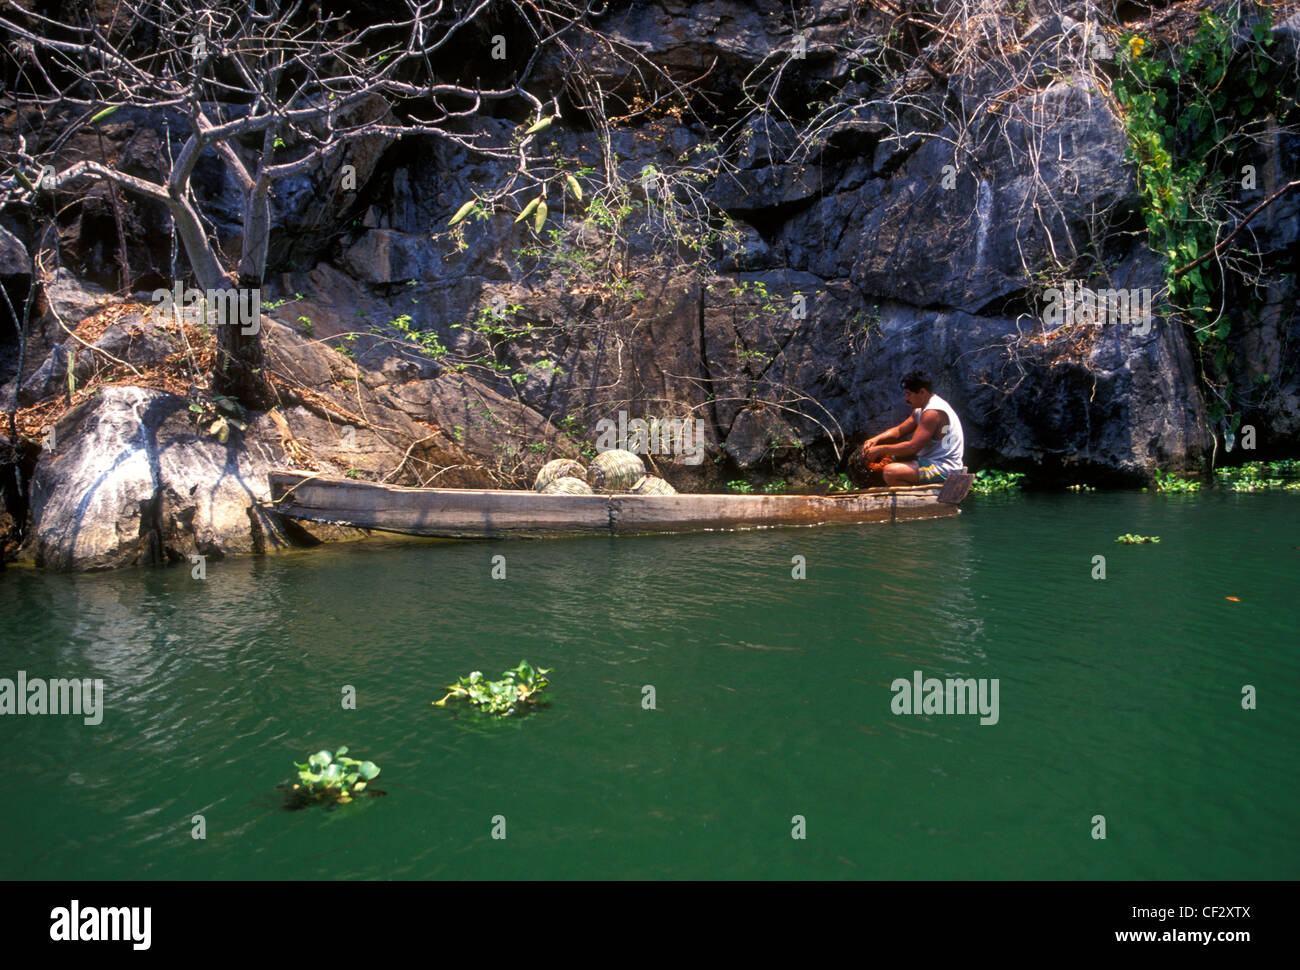 1, un hombre Mexicano, pescador, pesca con trampa de peces, pesca, canoa, Río Papagayo, Río Papagayo, cerca del Puente Viejo, en el estado de Guerrero, México Foto de stock